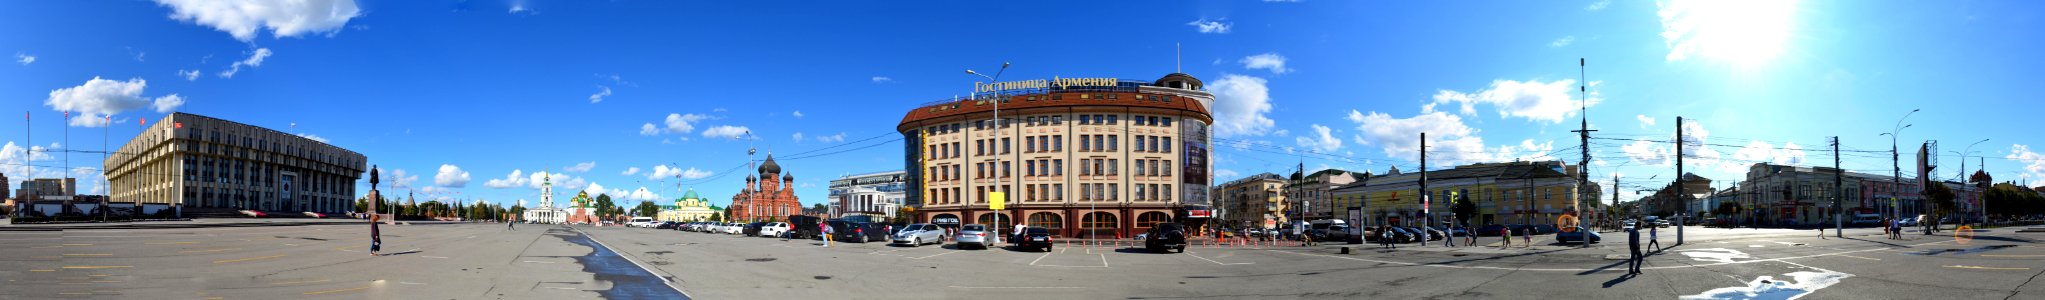 Lenin square in Tula photo